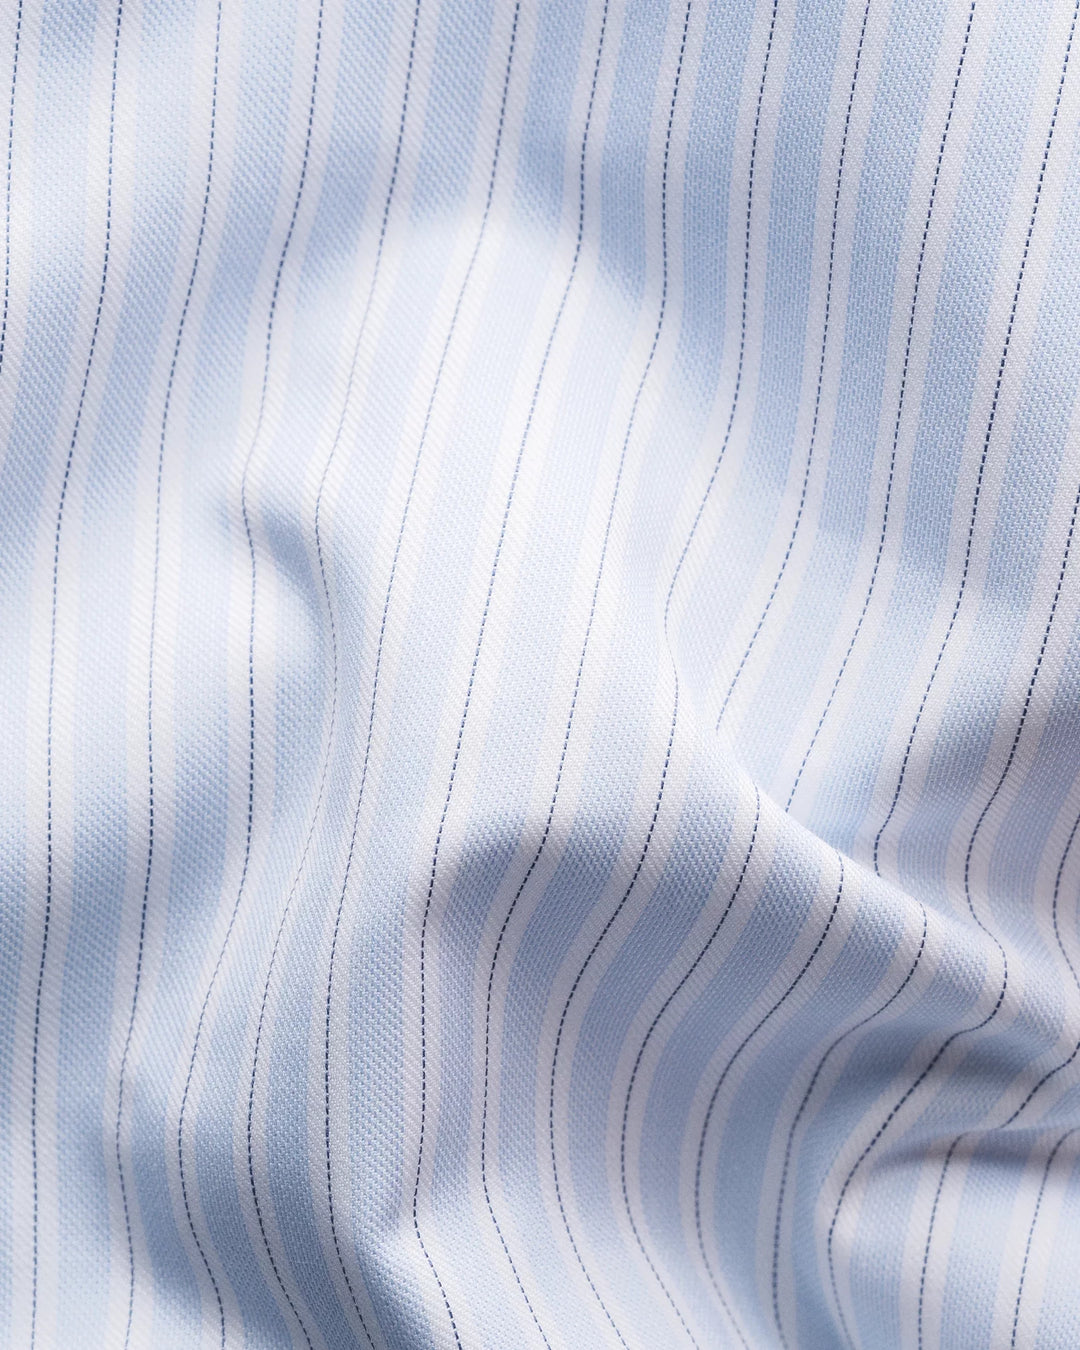 Eton Stripe Dress Shirt in Light Blue